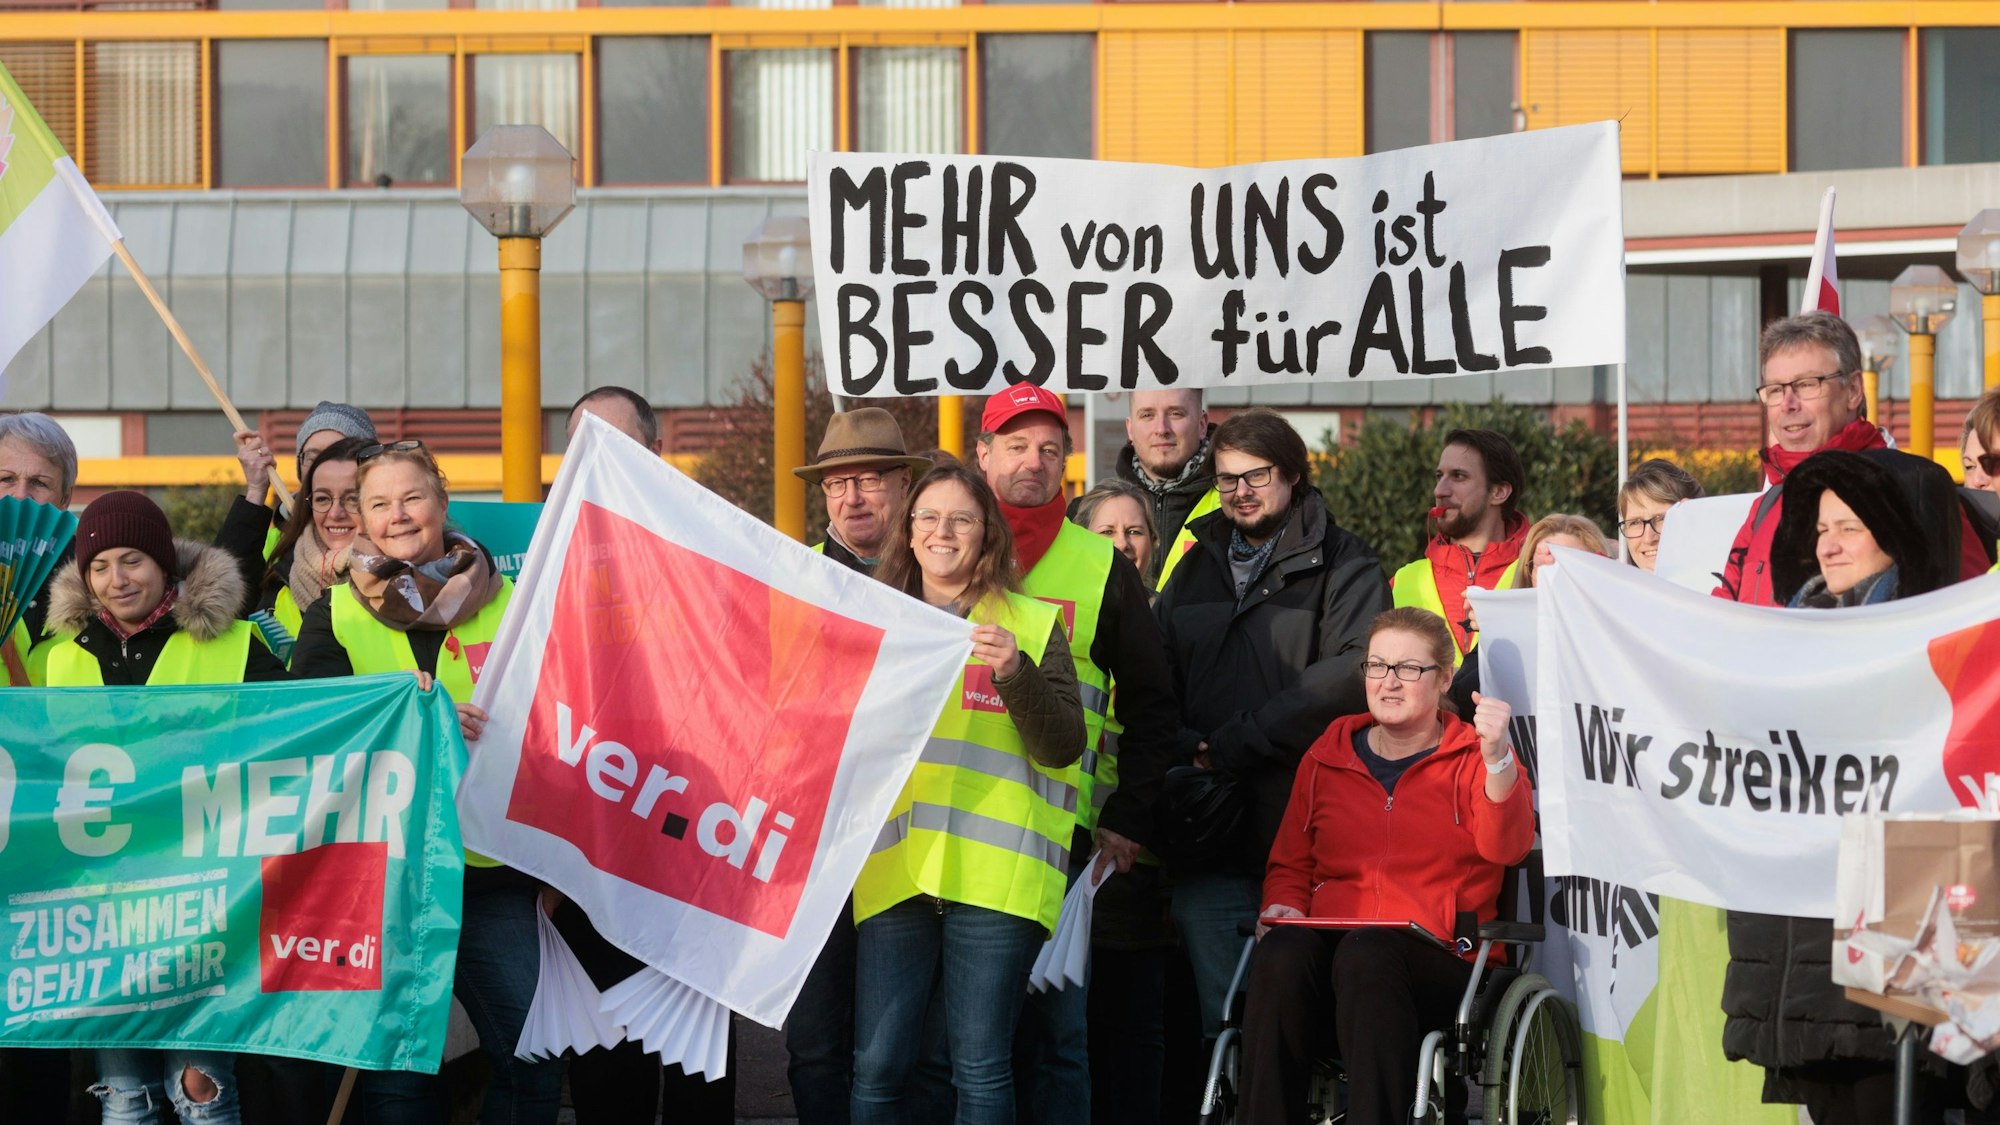 Bei einem Streik halten mehrere Personen, bekleidet mit gelben Warnwesten, Schilder und Banner in die Höhe. Darauf steht: „Wir streiken“, „Verdi“ und „Mehr von uns ist besser für alle“.